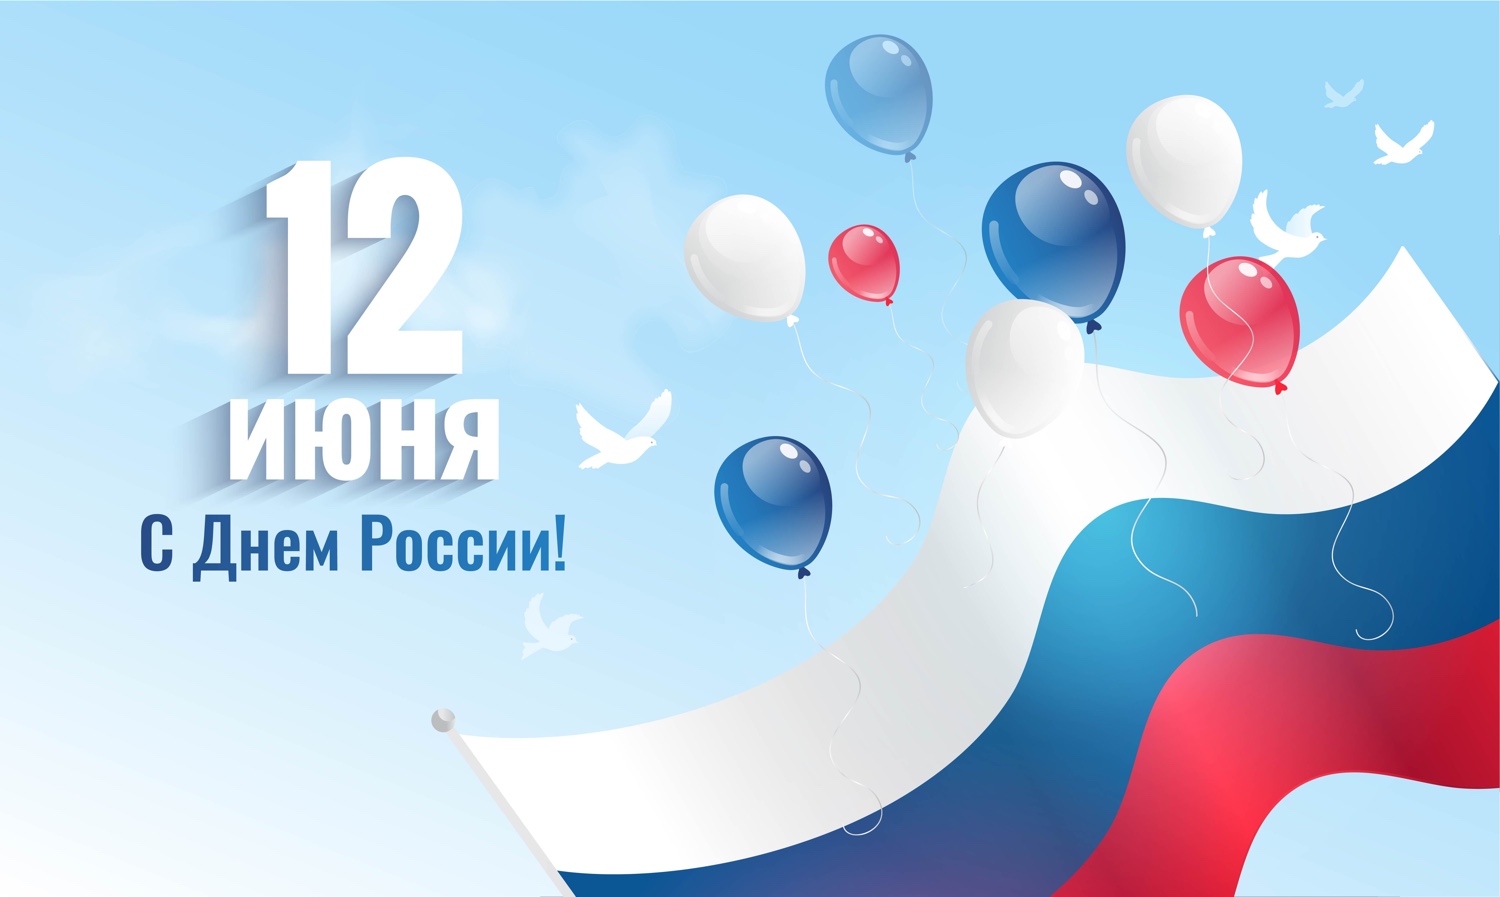 Поздравляем вас с Днем России